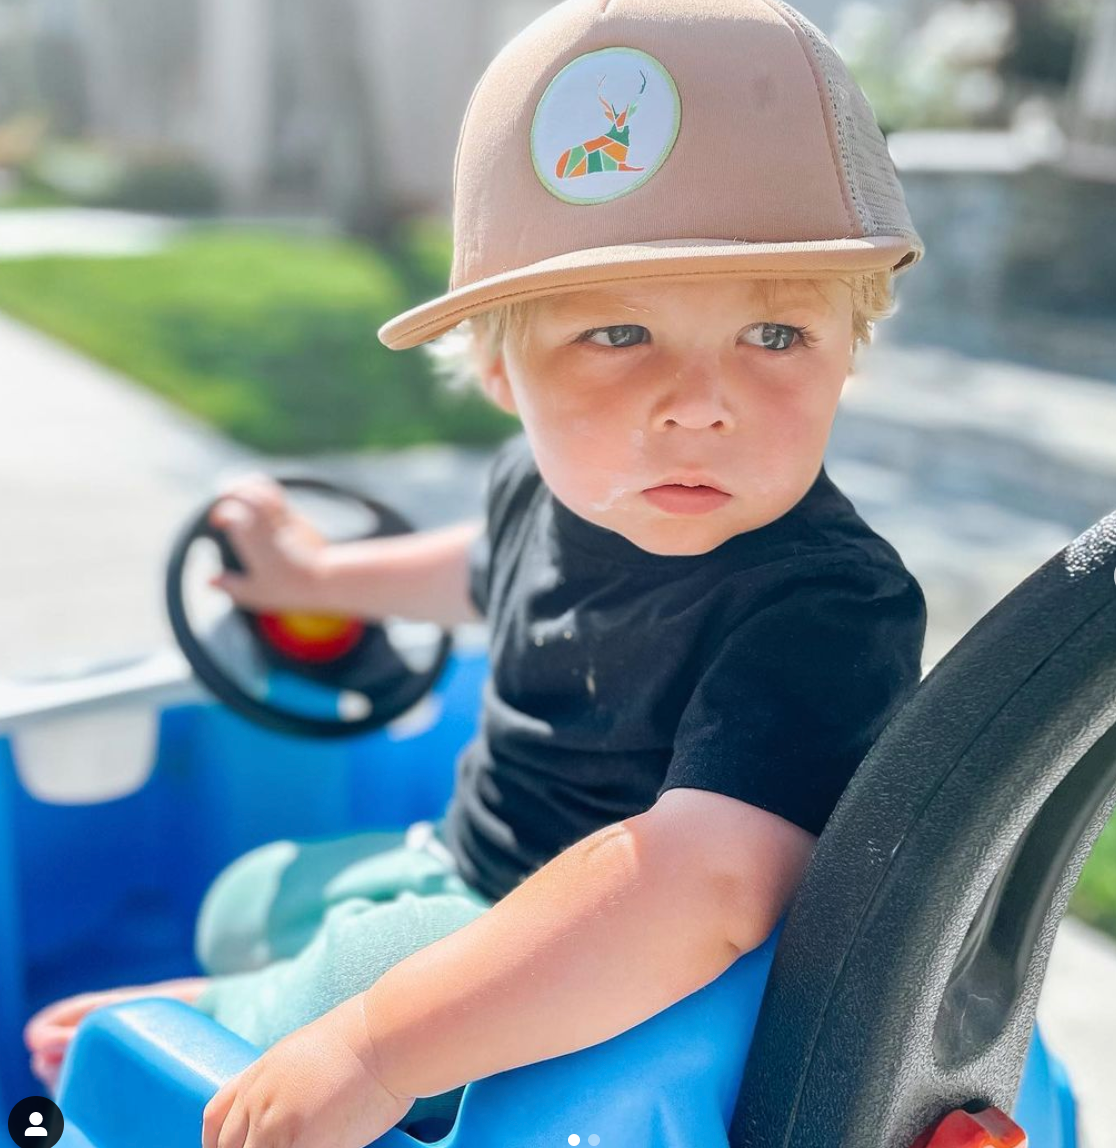 Cute kid in trucker hat